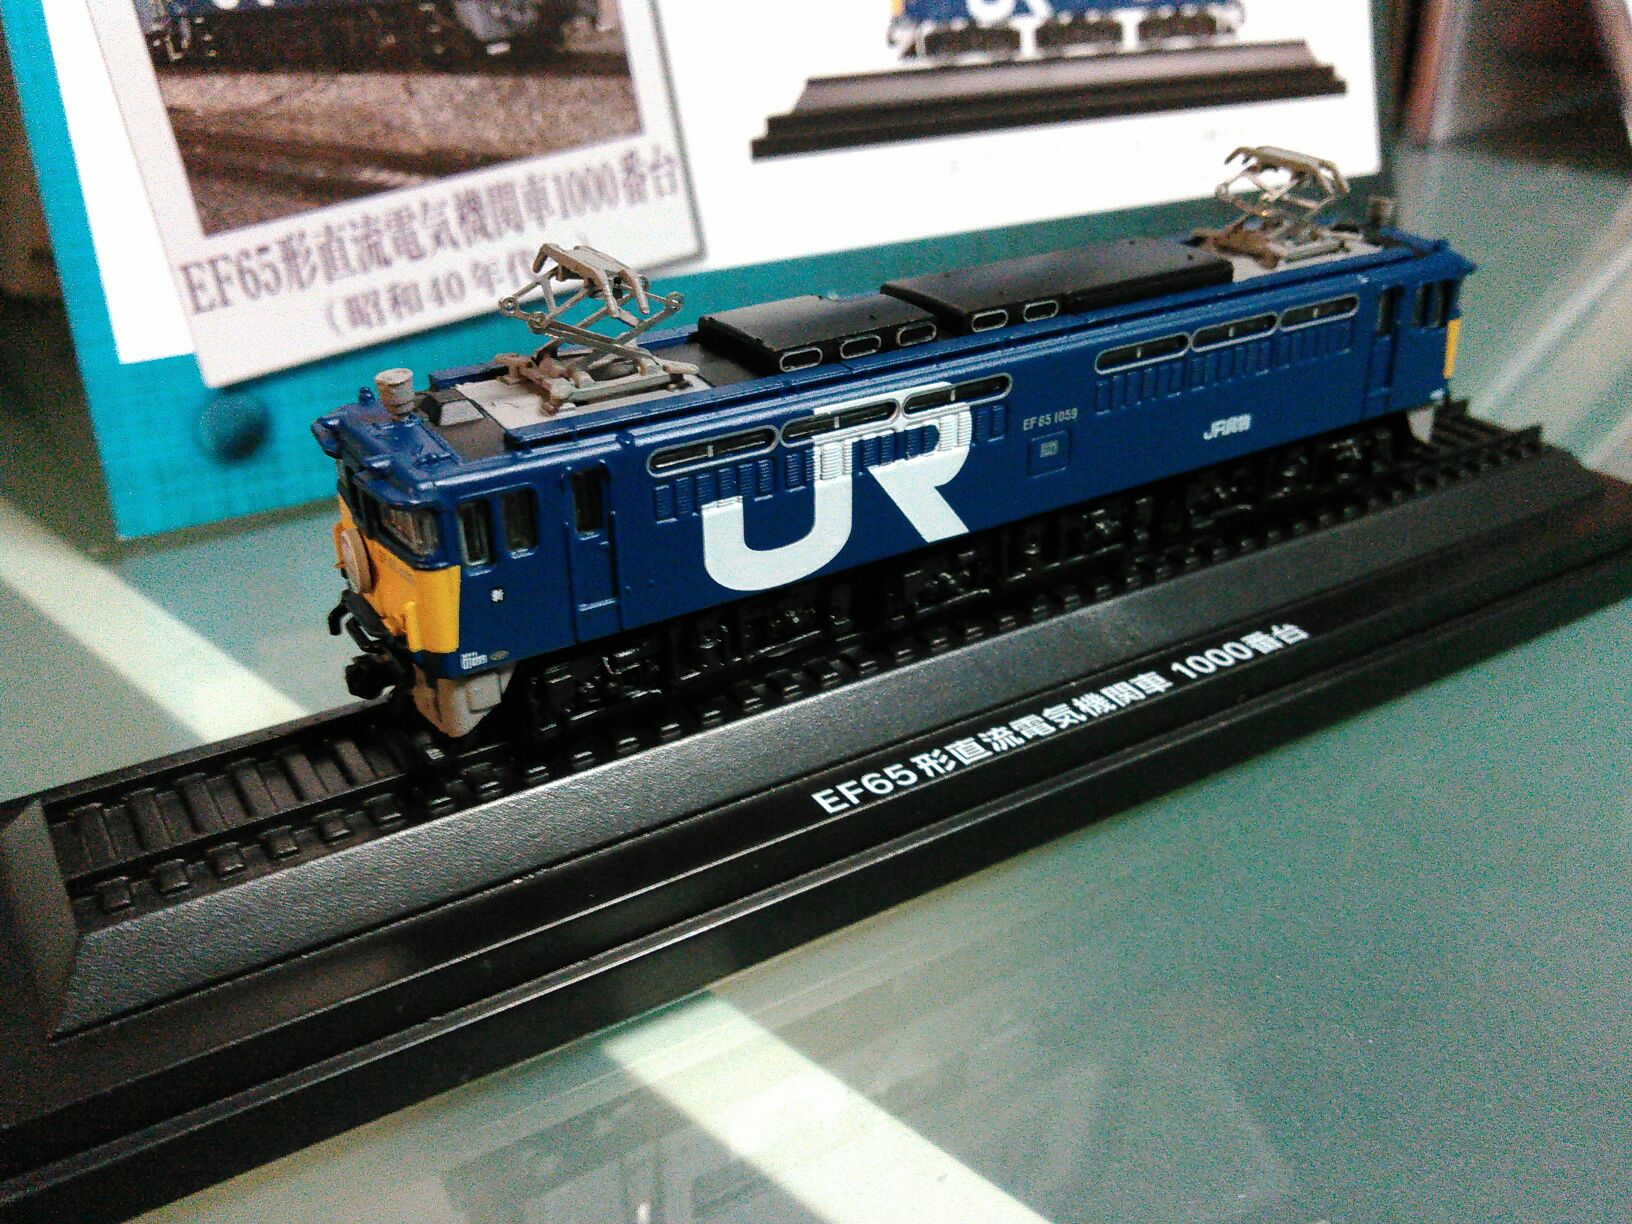 9198円 通販 ロクハン Zゲージ EF65形 1000番代 1059号機 JR貨物試験塗装 T035-5 鉄道模型 電気機関車